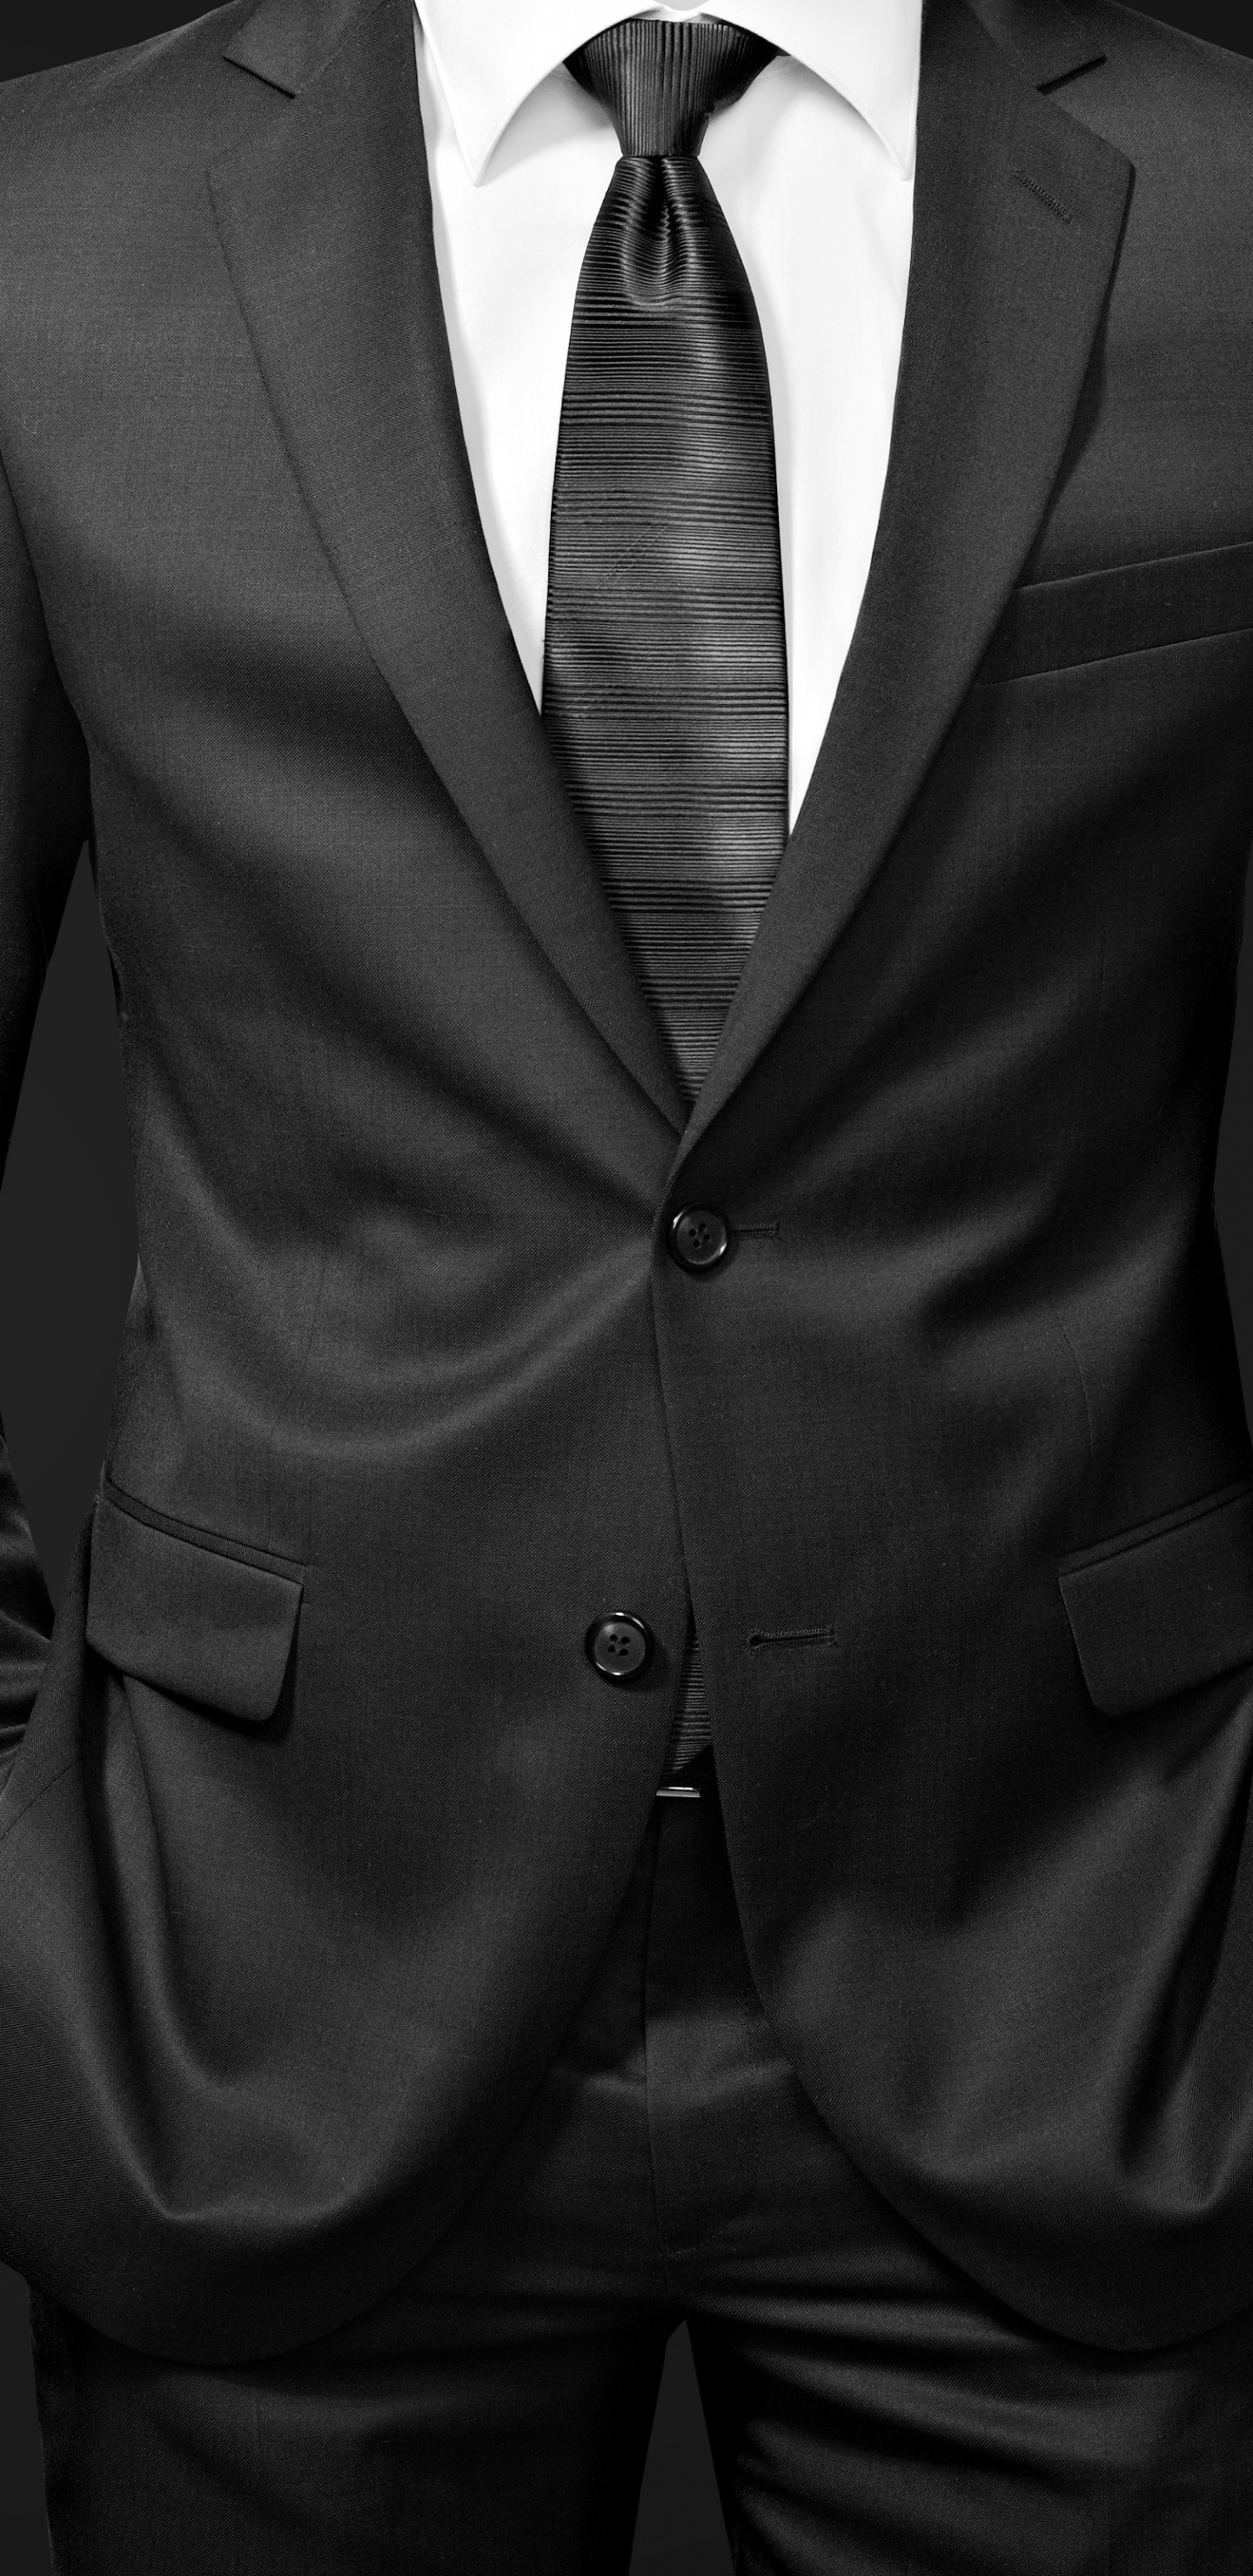 Homme en Veste de Costume Noir. Wallpaper in 1440x2960 Resolution